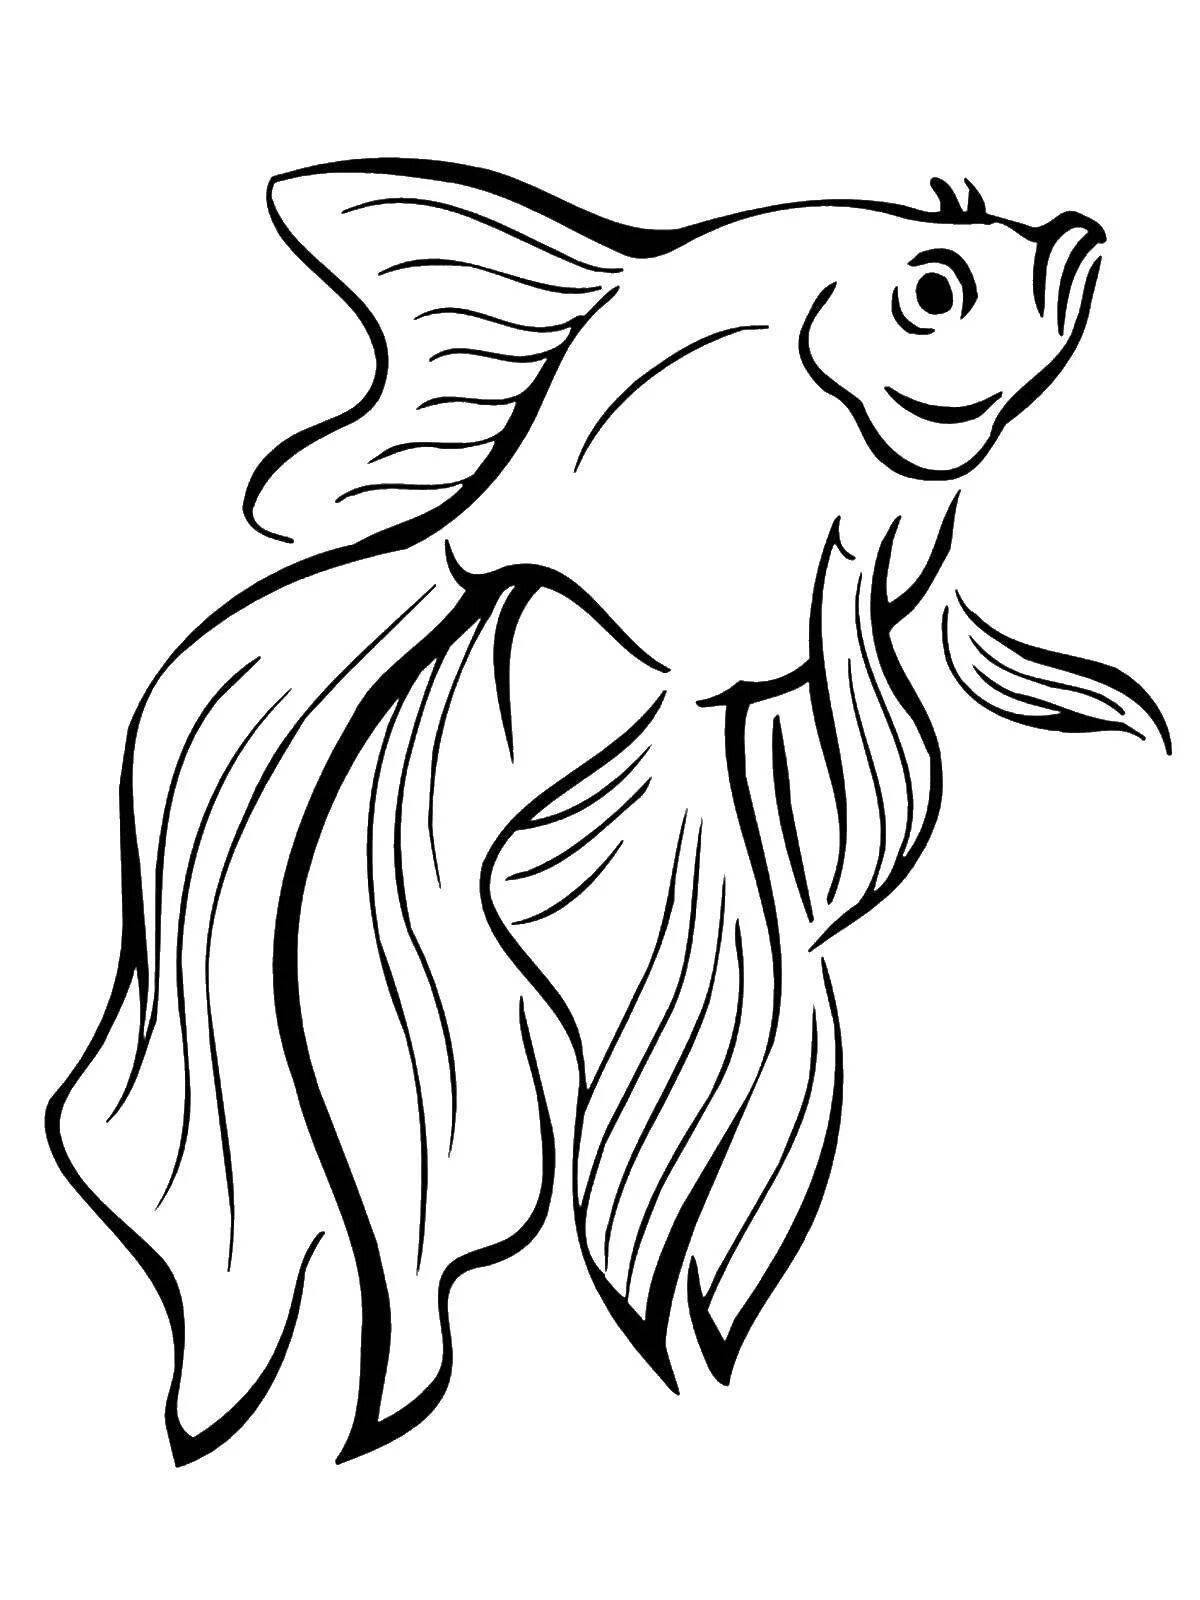 Заманчивый рисунок золотой рыбки